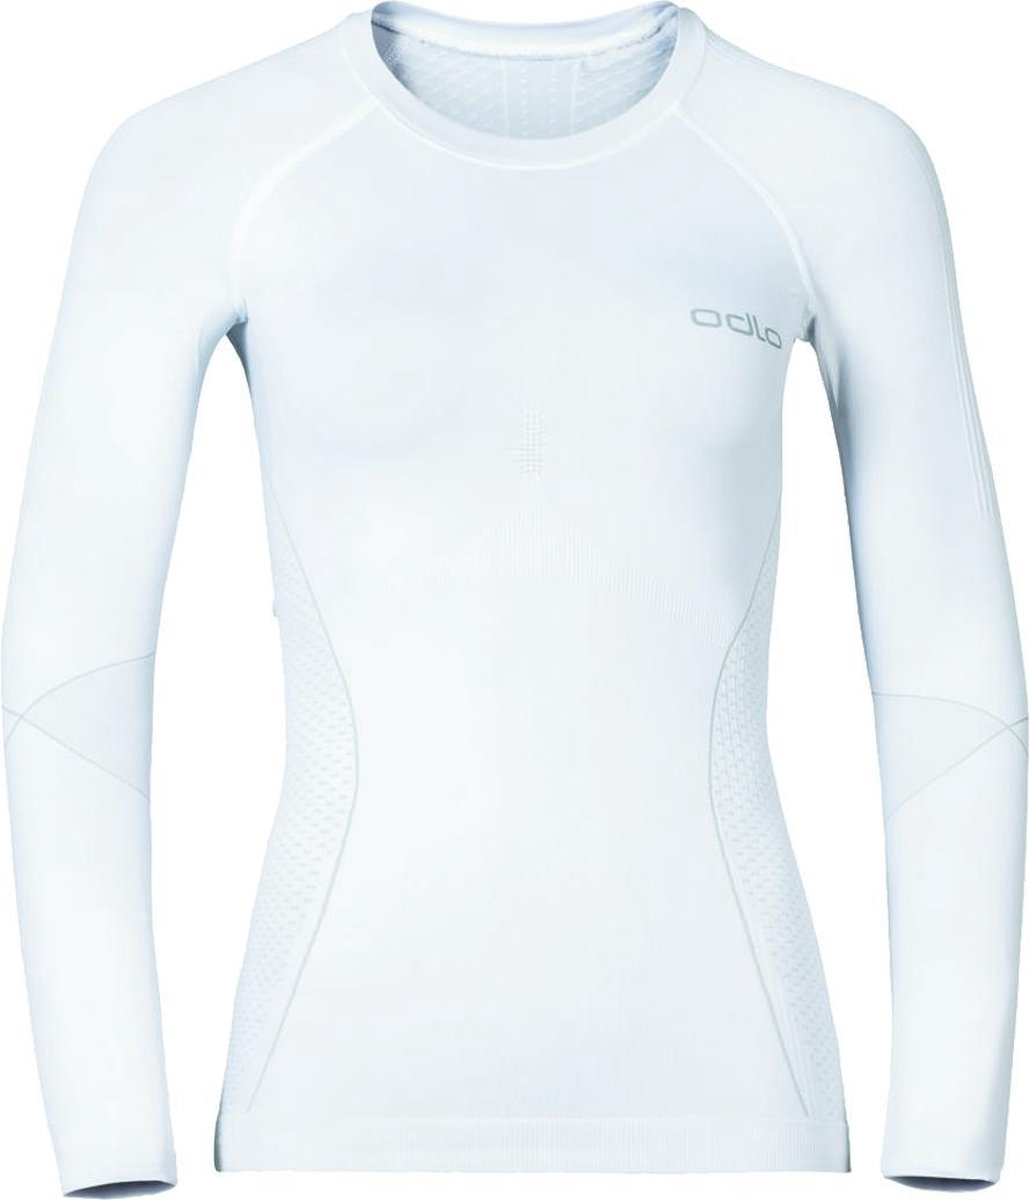 Odlo - Performance Warm Sports Underwear Longsleeve - Wit Ondershirt Dames - XS - Wit